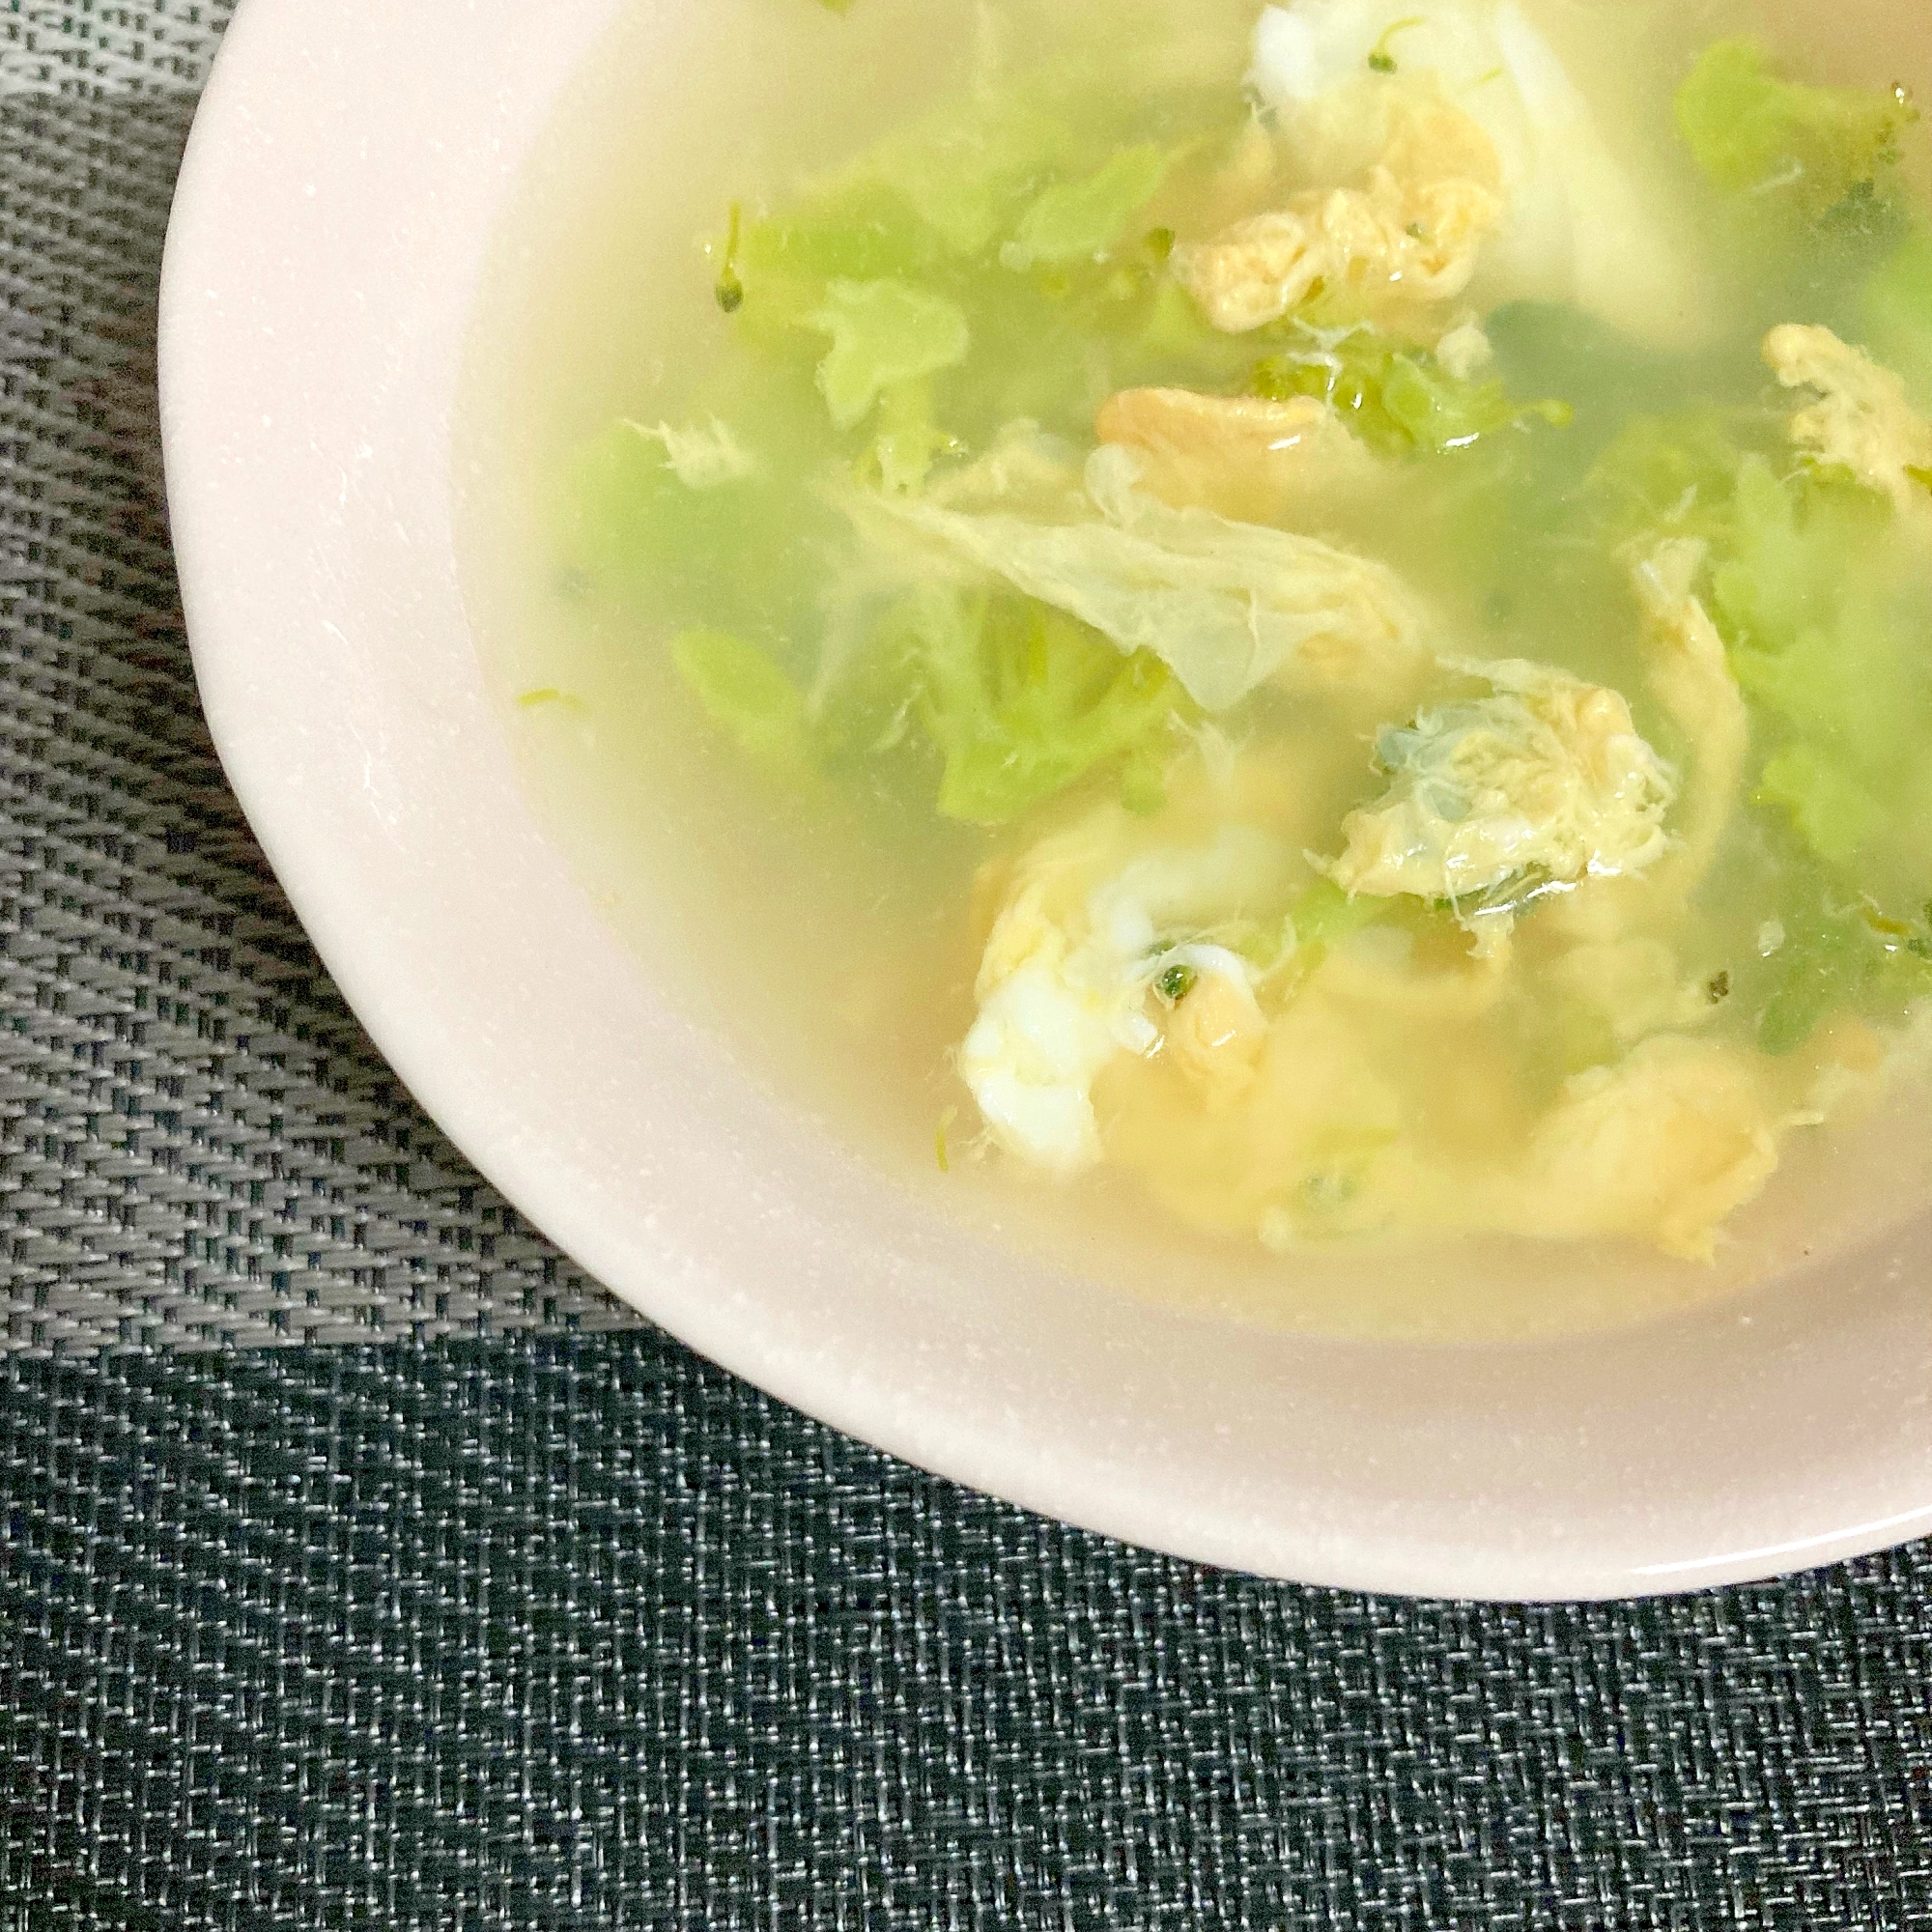 茎も使おう ブロッコリー食べきり簡単卵スープ